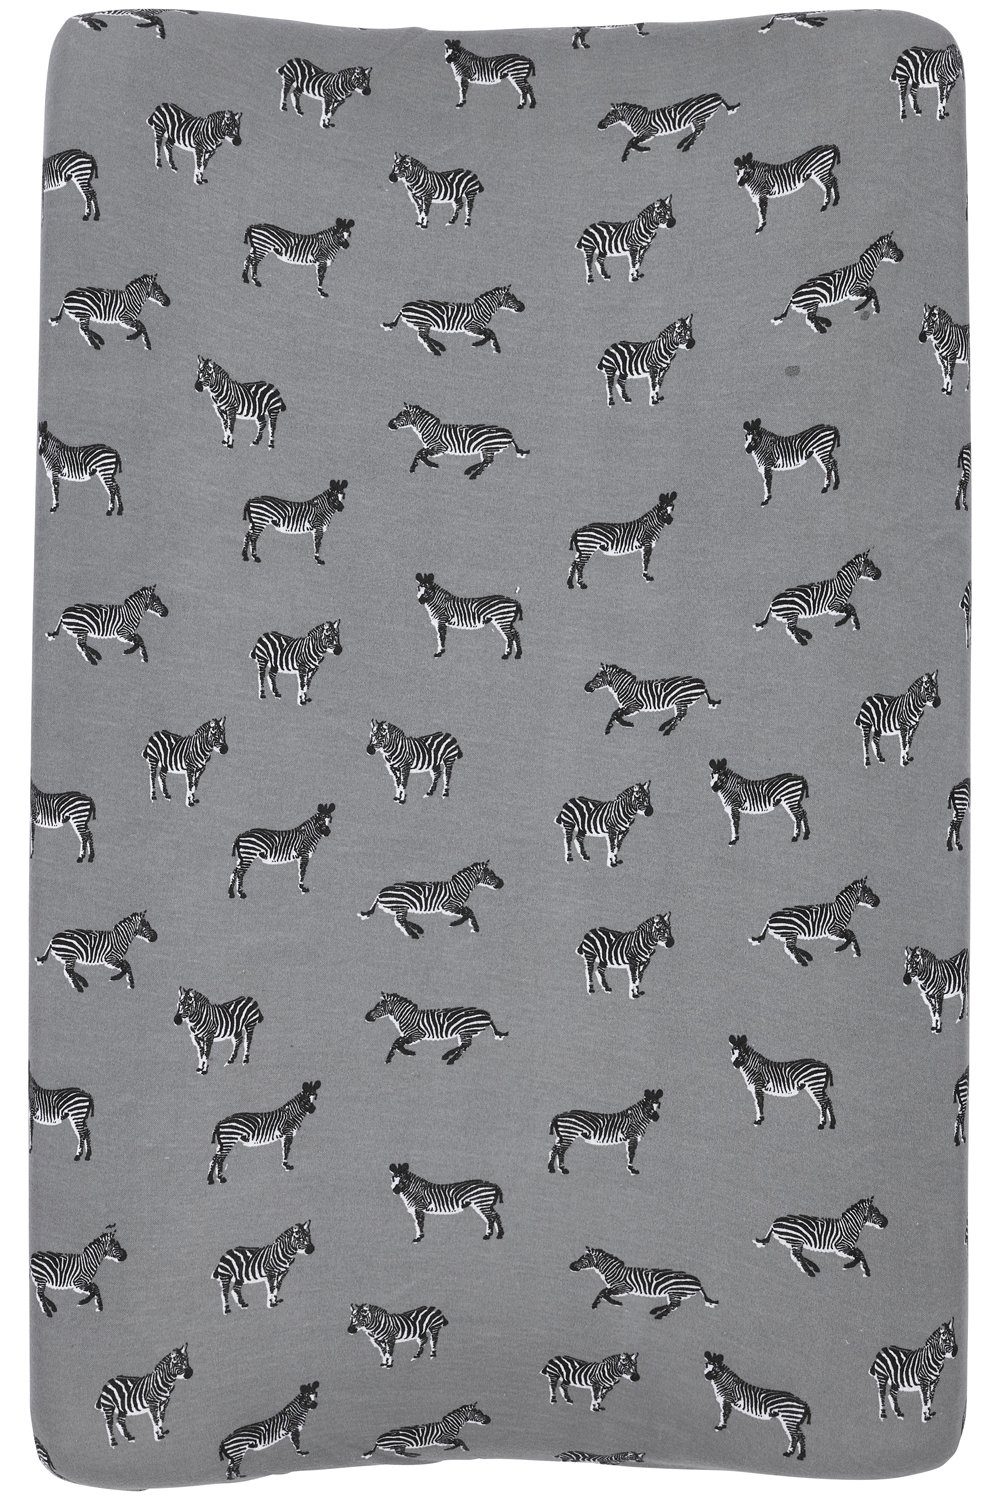 Wickelauflagenbezug Grey 50x70cm (1-tlg), Animal Baby Meyco Zebra